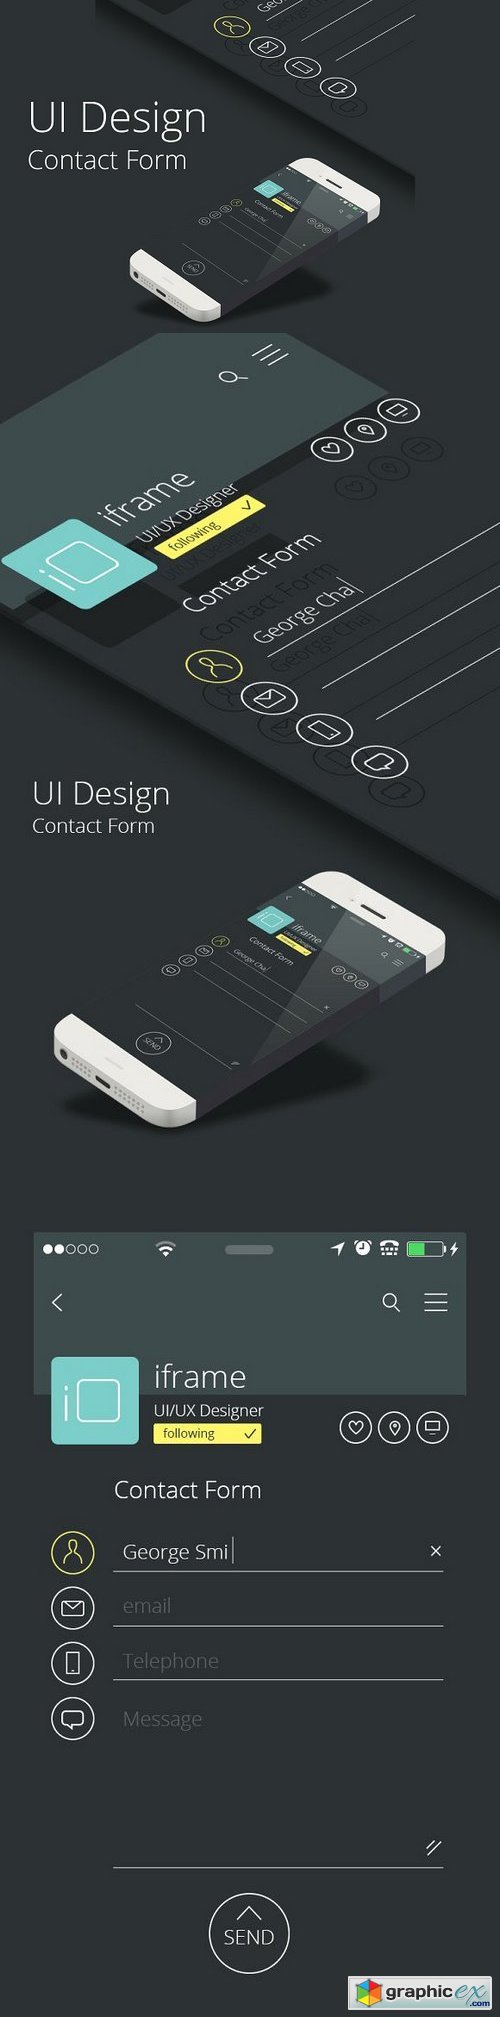 Contact Form UI Design